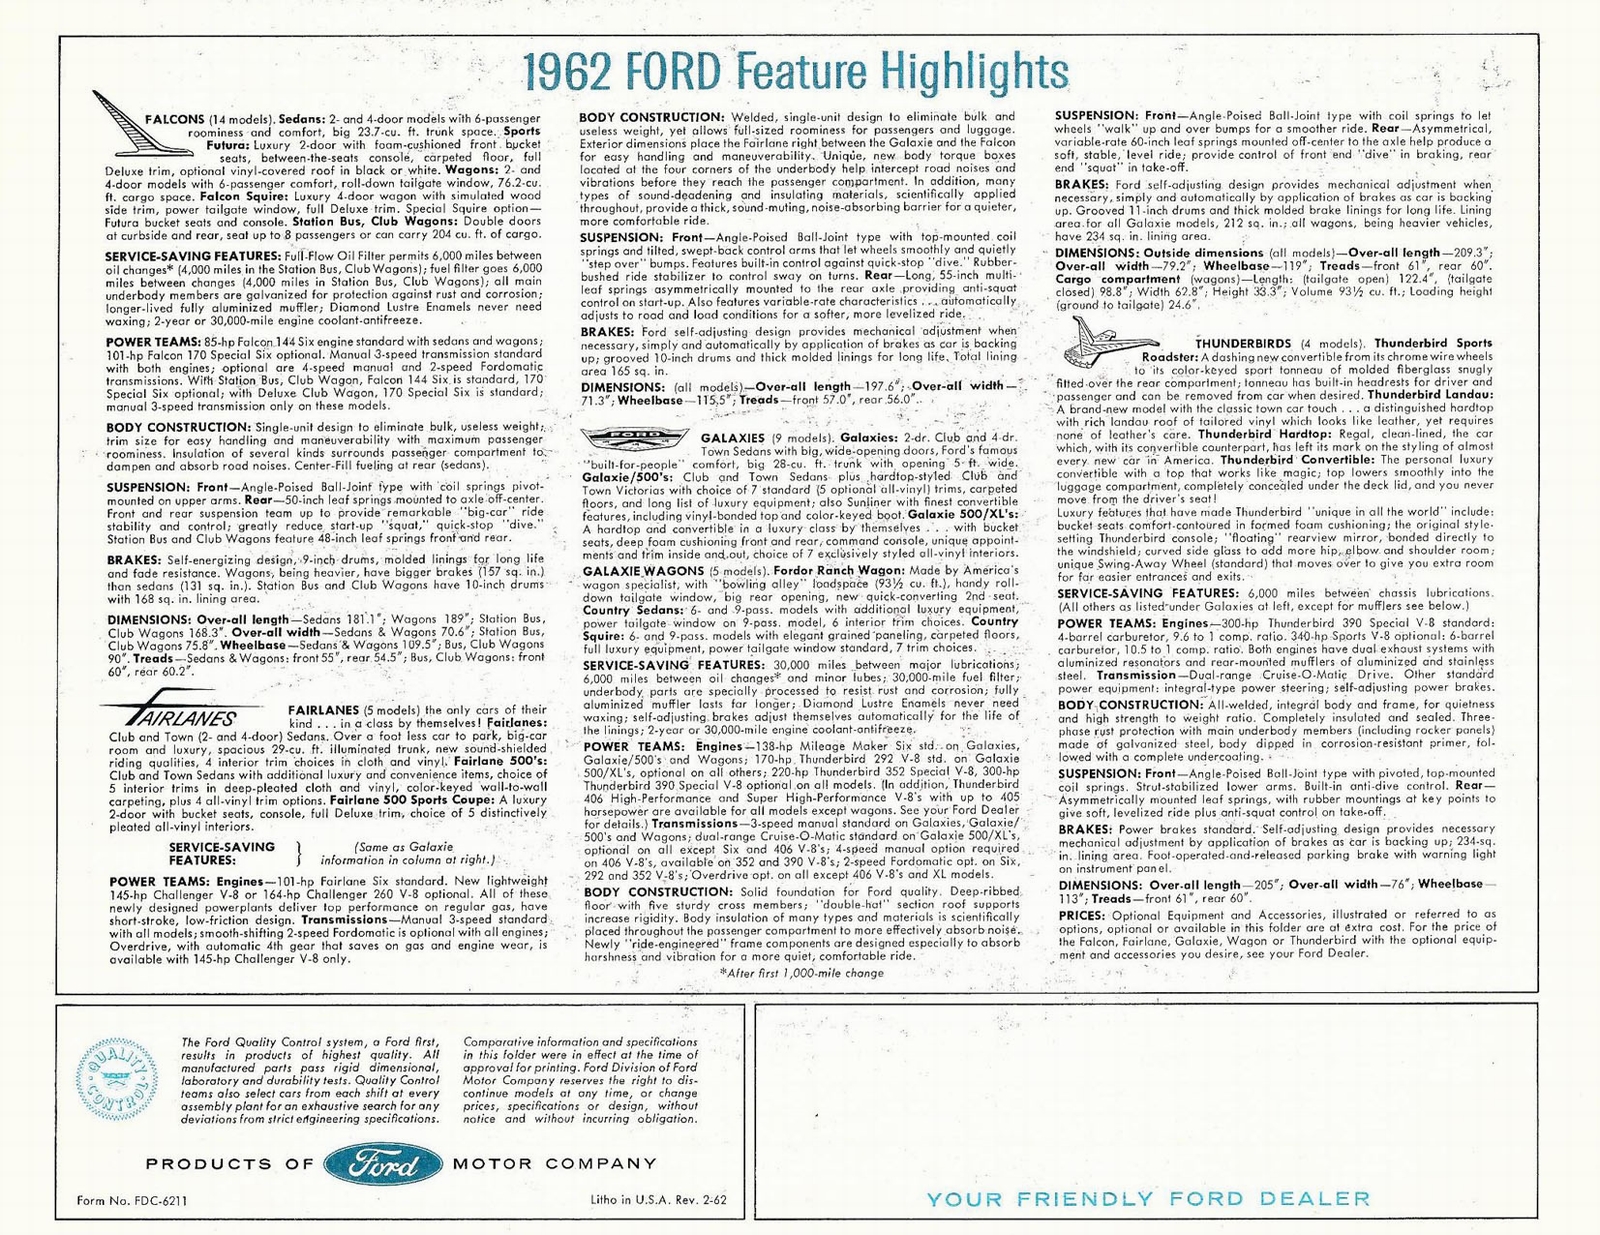 n_1962 Ford Full Line Folder (2-62)-07-08.jpg